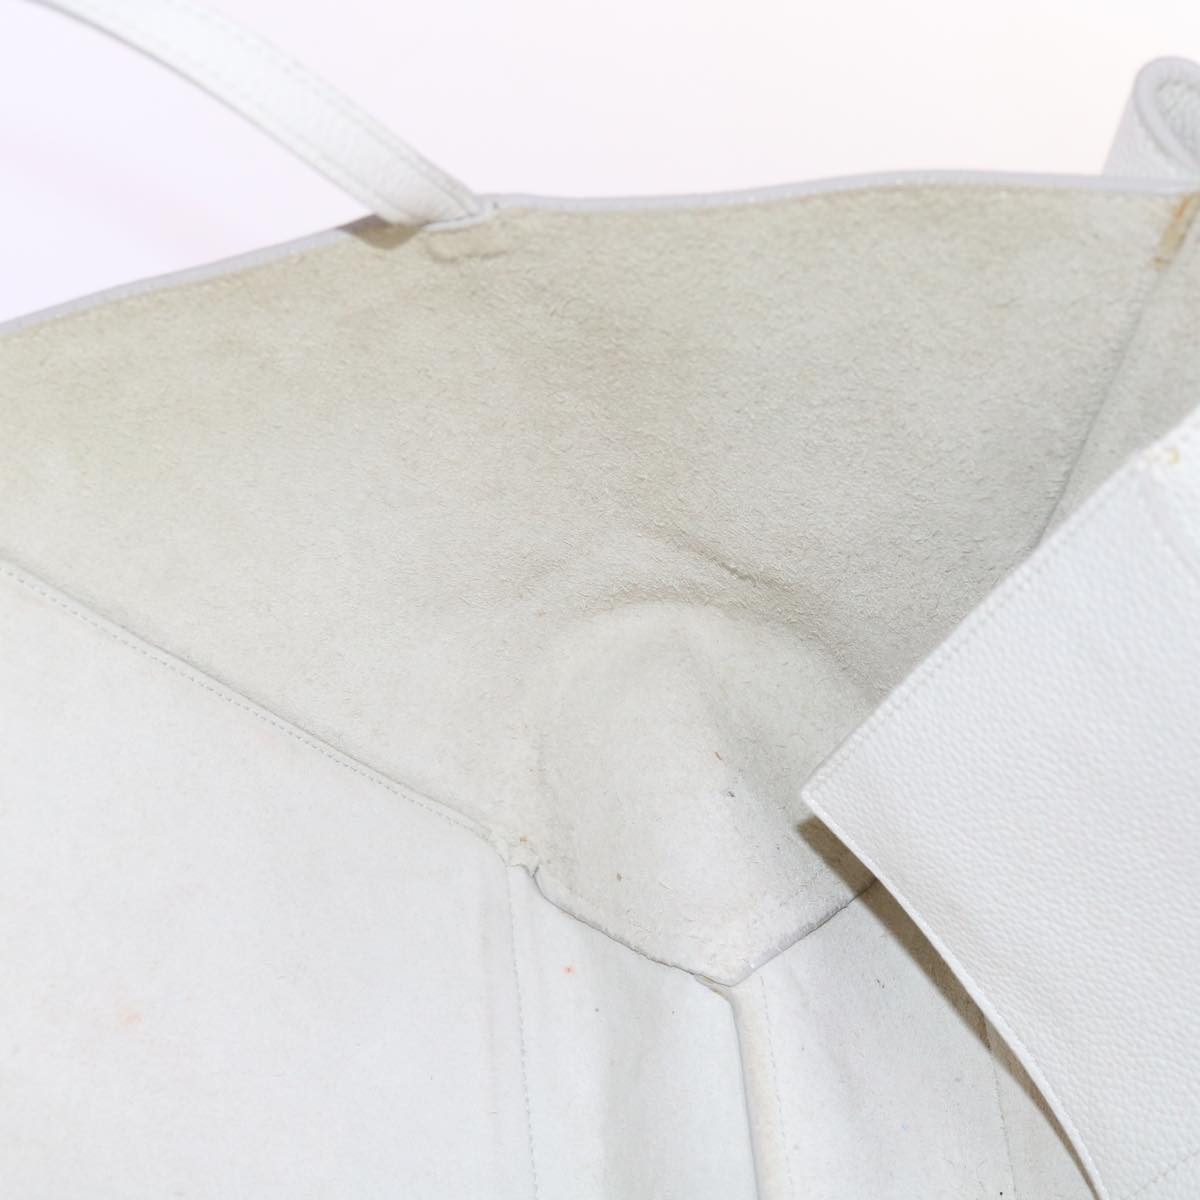 CELINE Shoulder Bag Leather White Auth bs11408